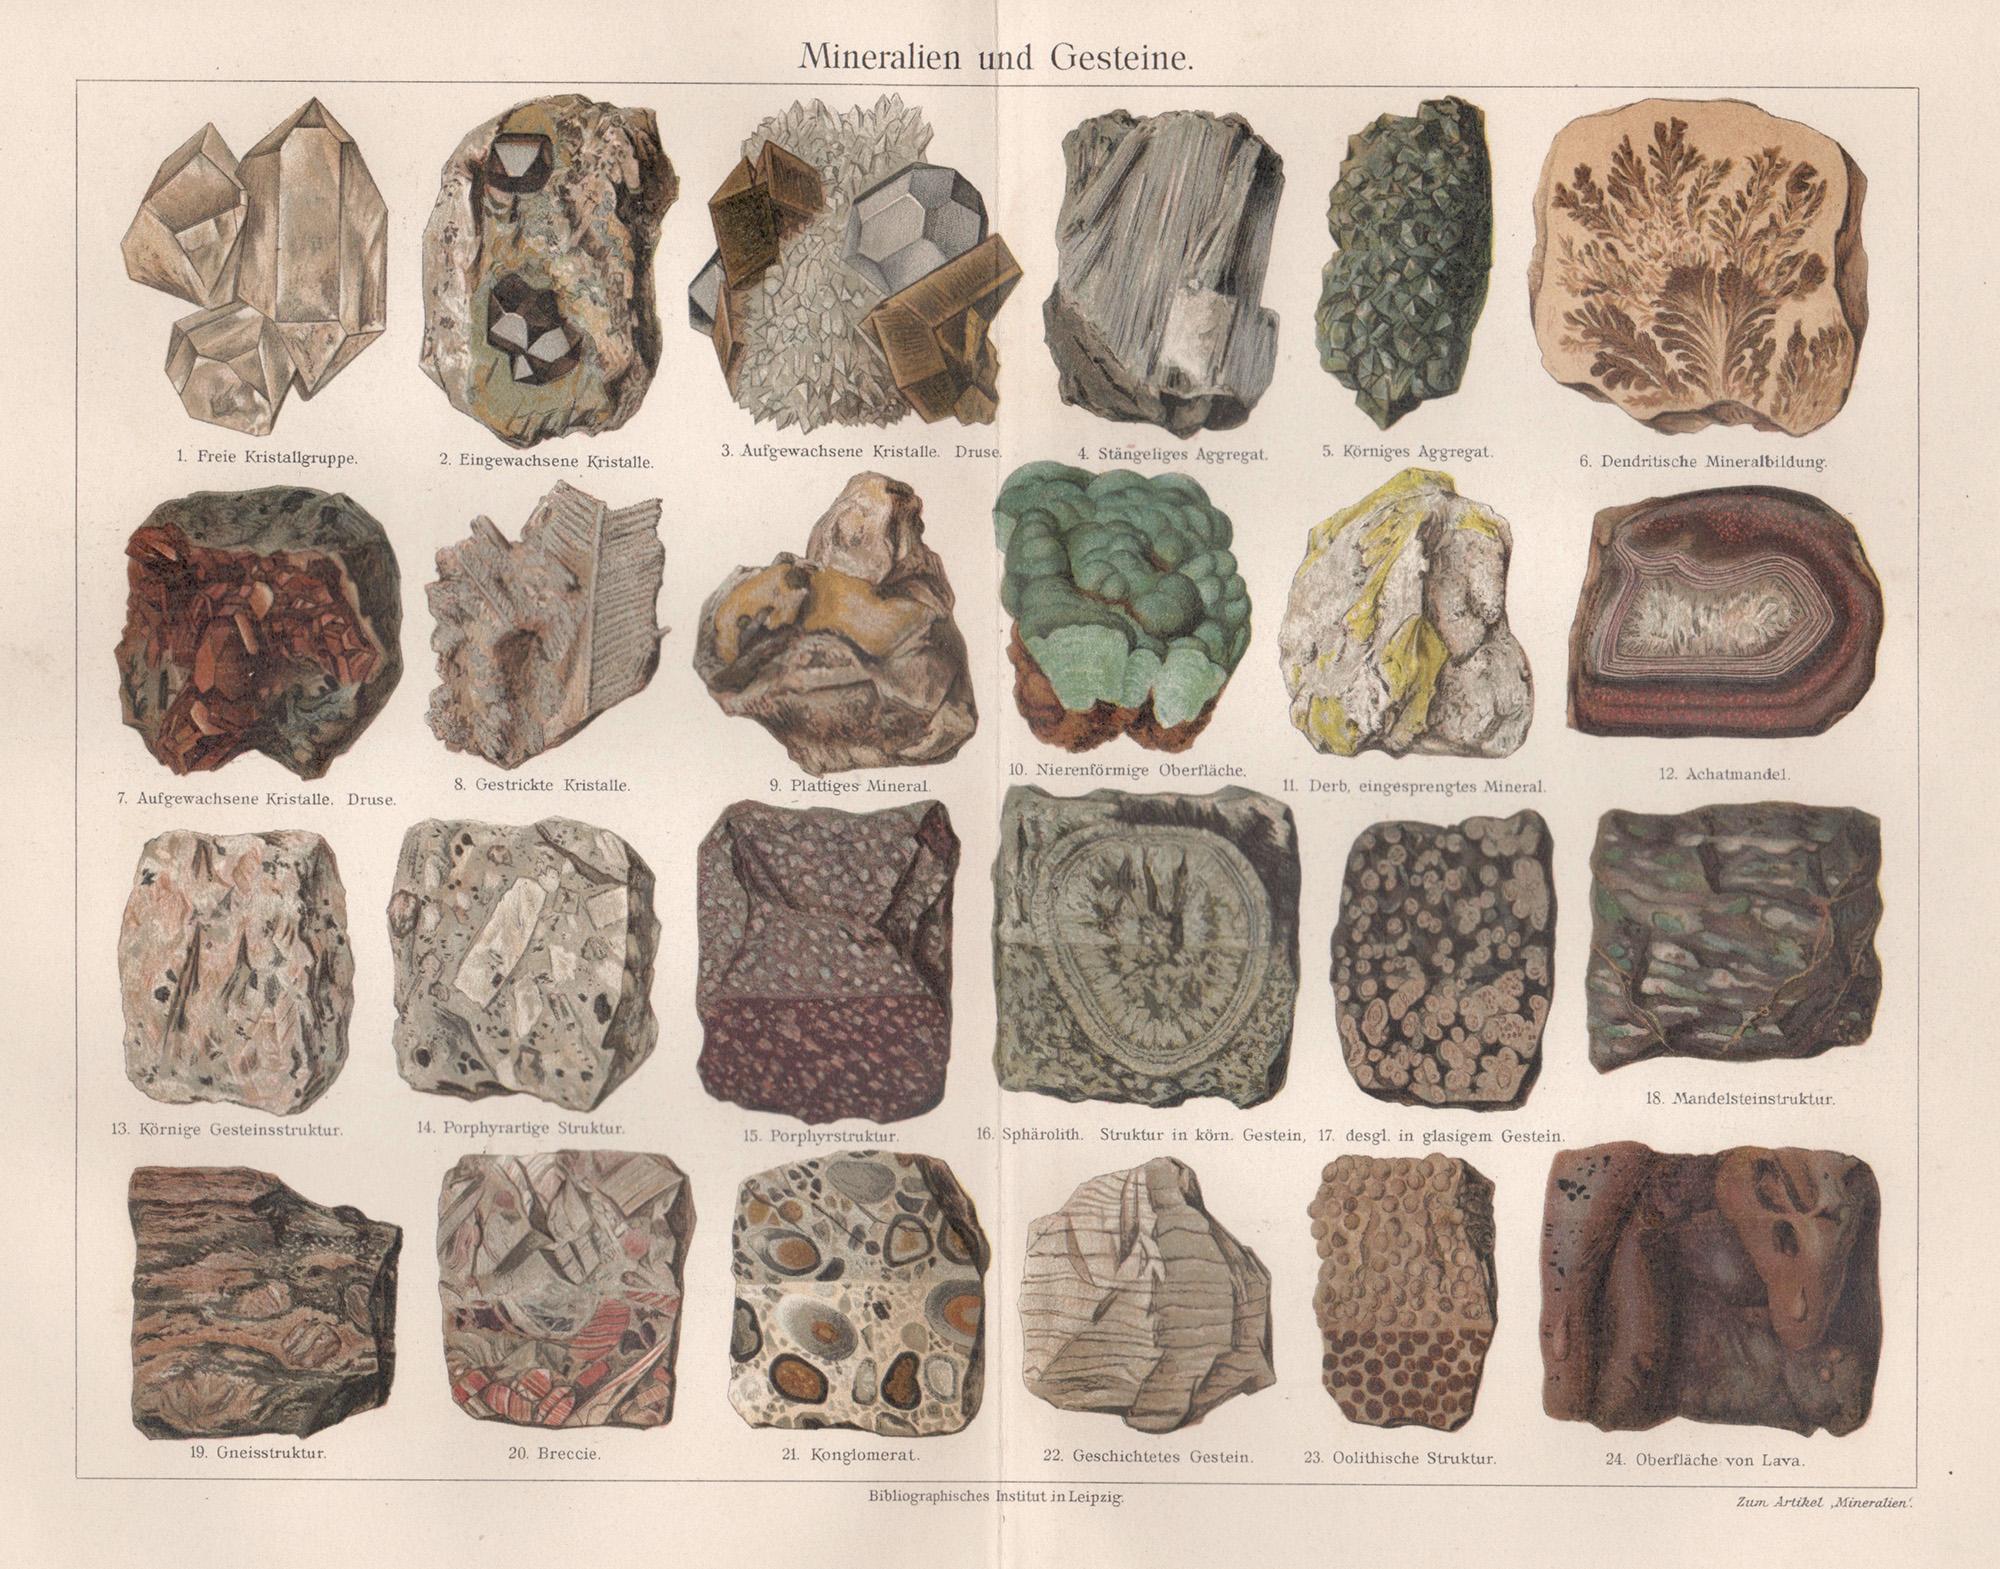 Unknown Still-Life Print - Mineralien und Gesteine (Minerals and Rocks), German antique geology print